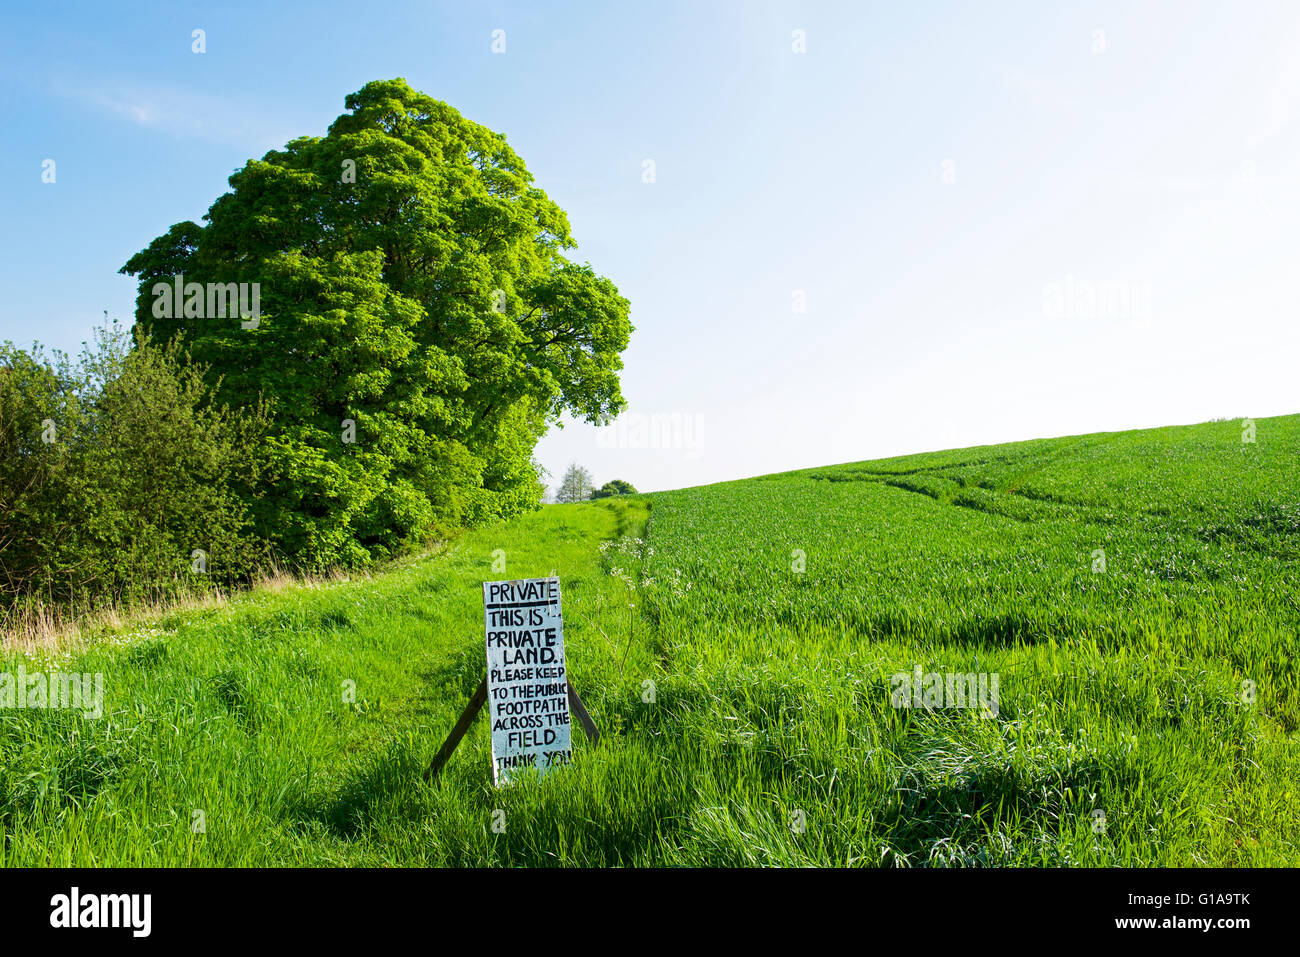 Sign in campo dicendo questo è un terreno privato, England Regno Unito Foto Stock